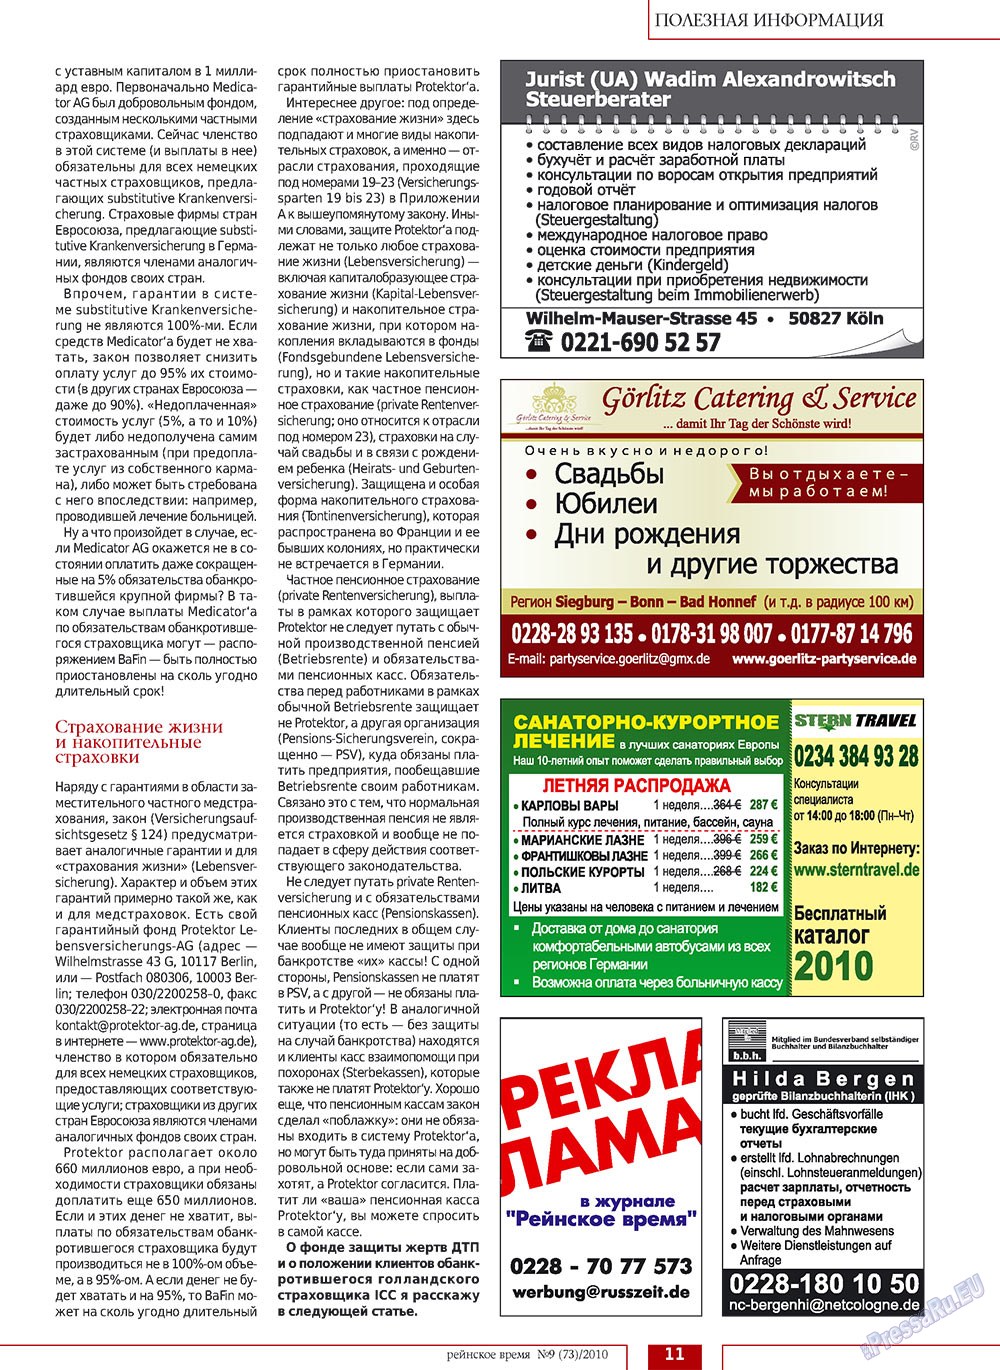 Rejnskoe vremja (Zeitschrift). 2010 Jahr, Ausgabe 9, Seite 11